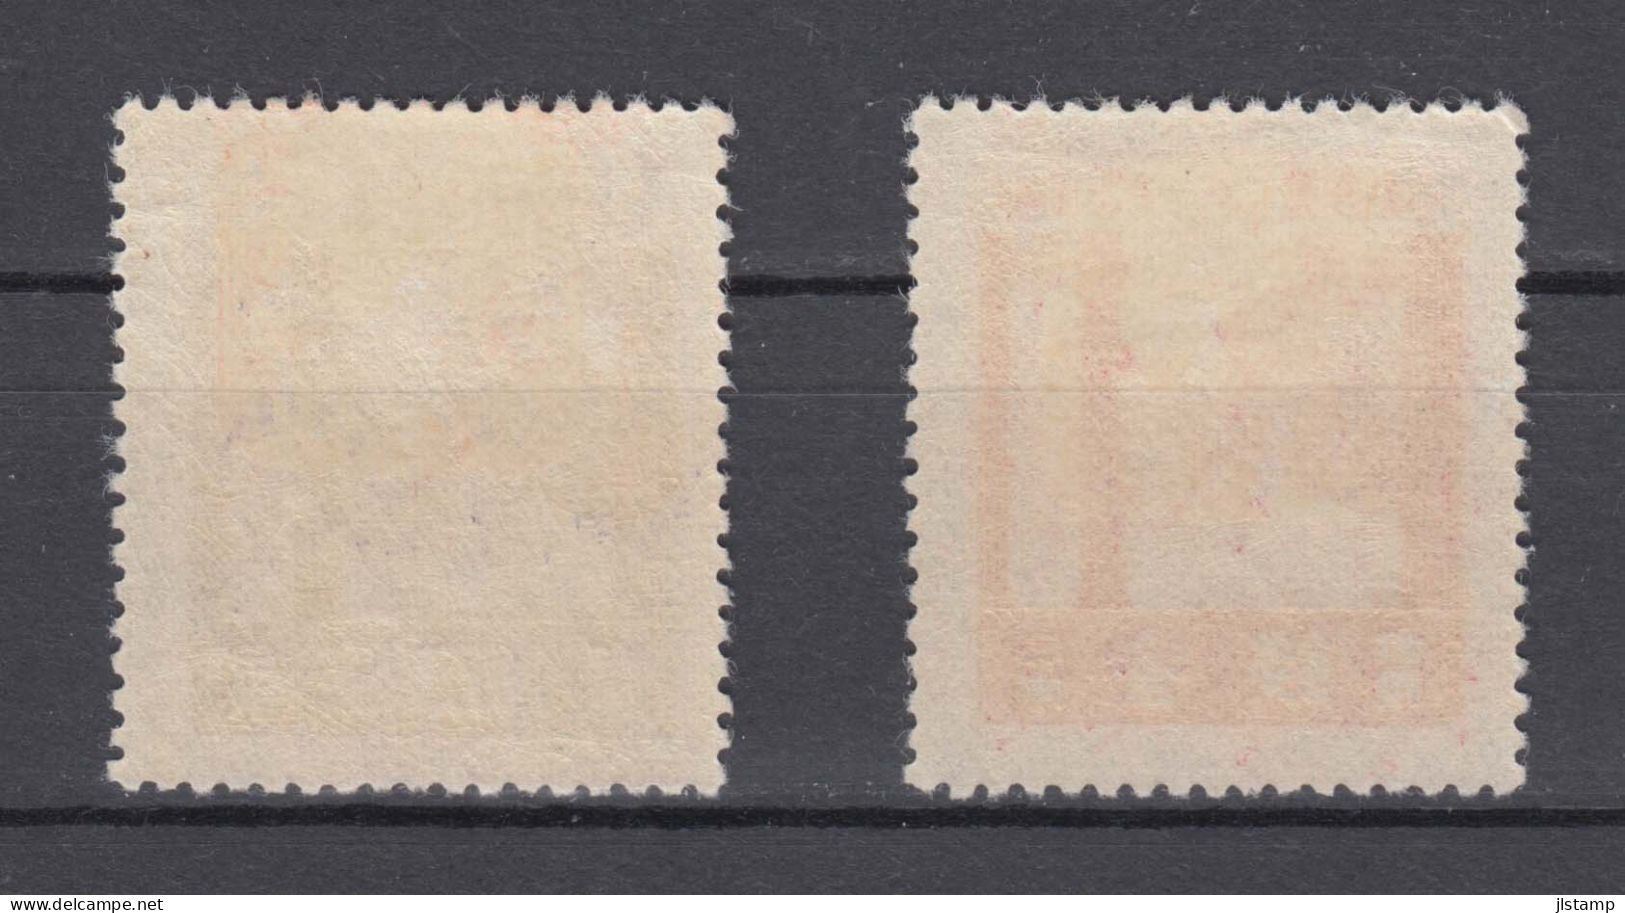 Japan 1929 Ise Shrines Stamps Set Of 2 ,Scott# 206-207,OG MH,VF - Neufs